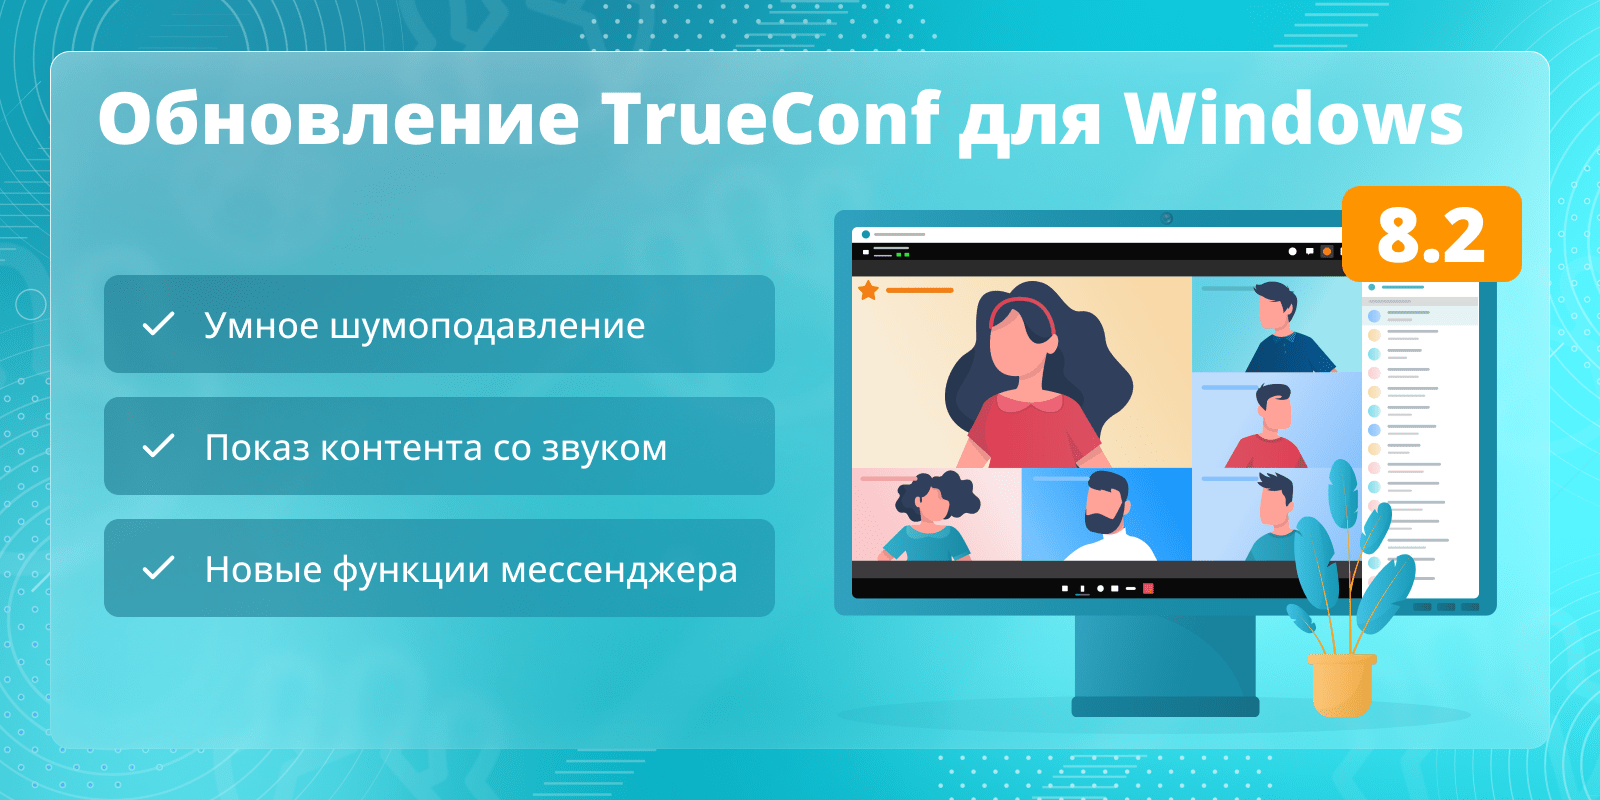 Обновление TrueConf 8.2 для Windows: Умное шумоподавление, новые функции мессенджера и показ контента со звуком 1